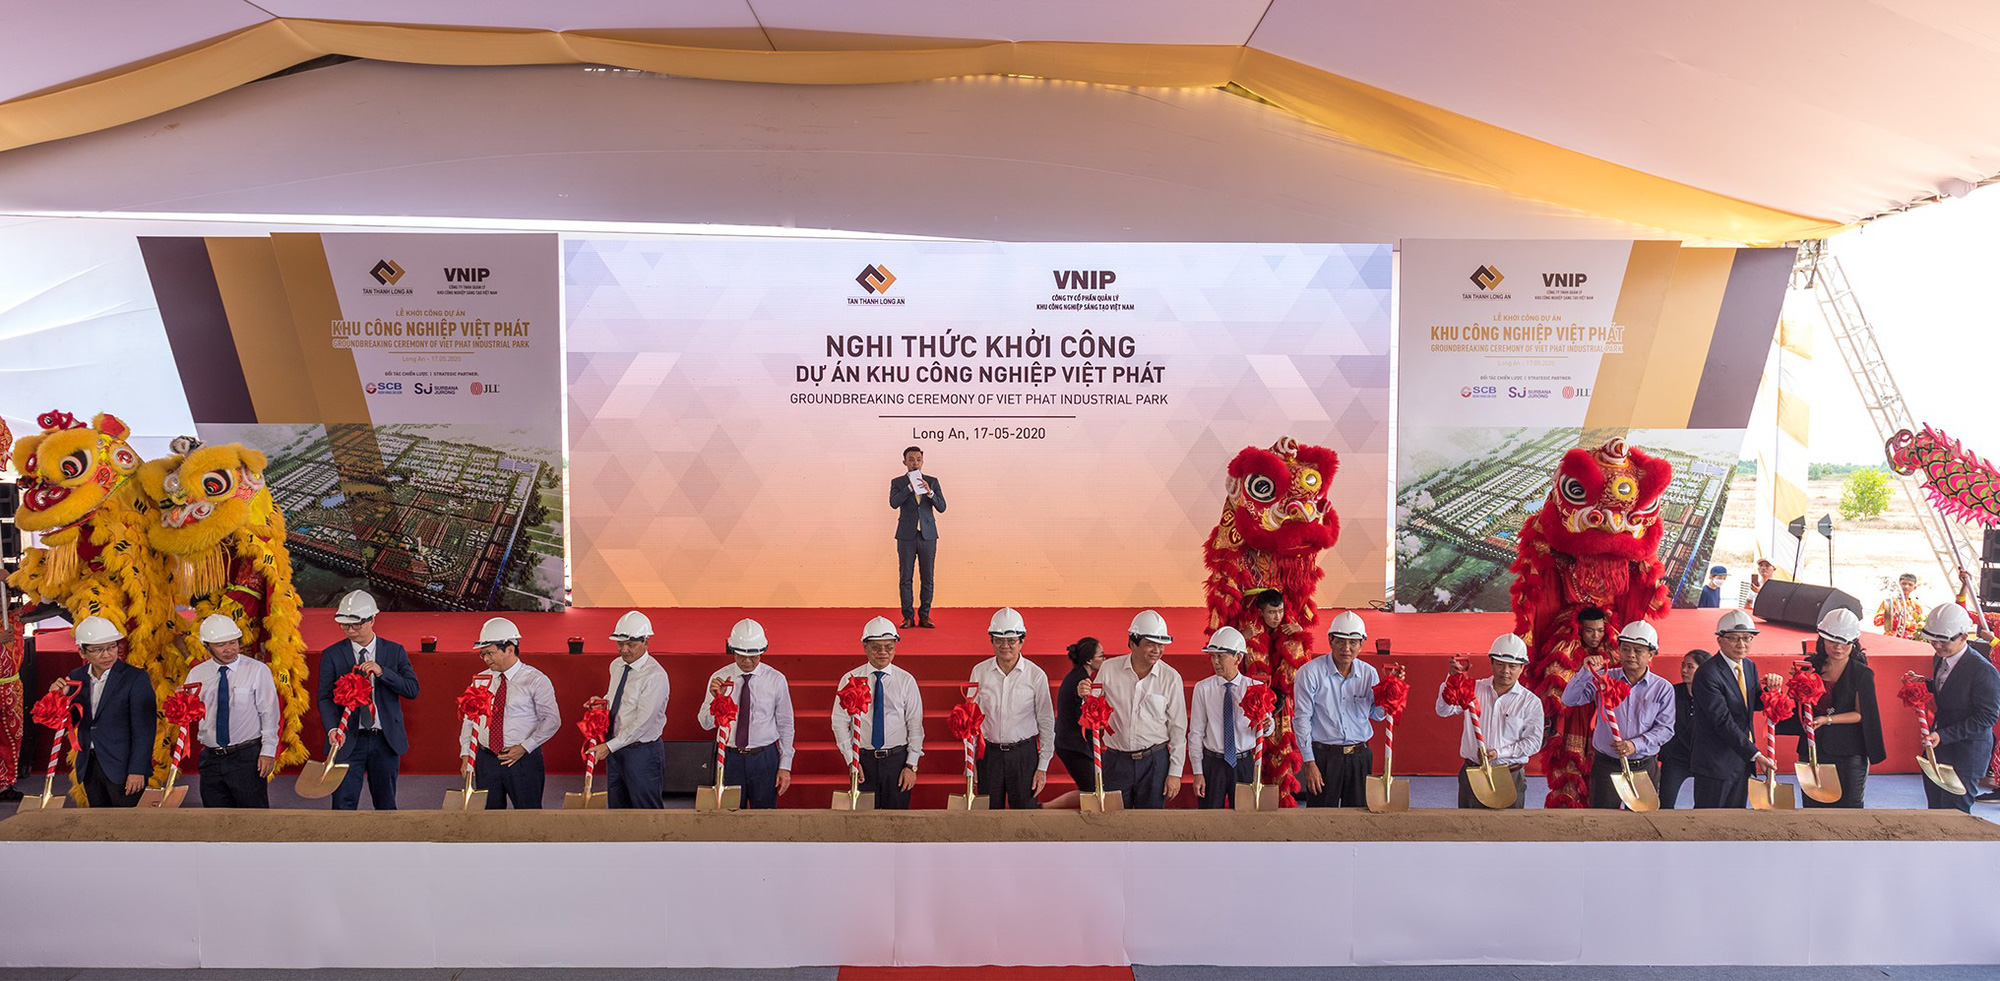 SCB tài trợ vốn cho dự án  Khu công nghiệp Việt Phát, hỗ trợ doanh nghiệp hậu Khu công nghiệp Việt Phát - Ảnh 1.